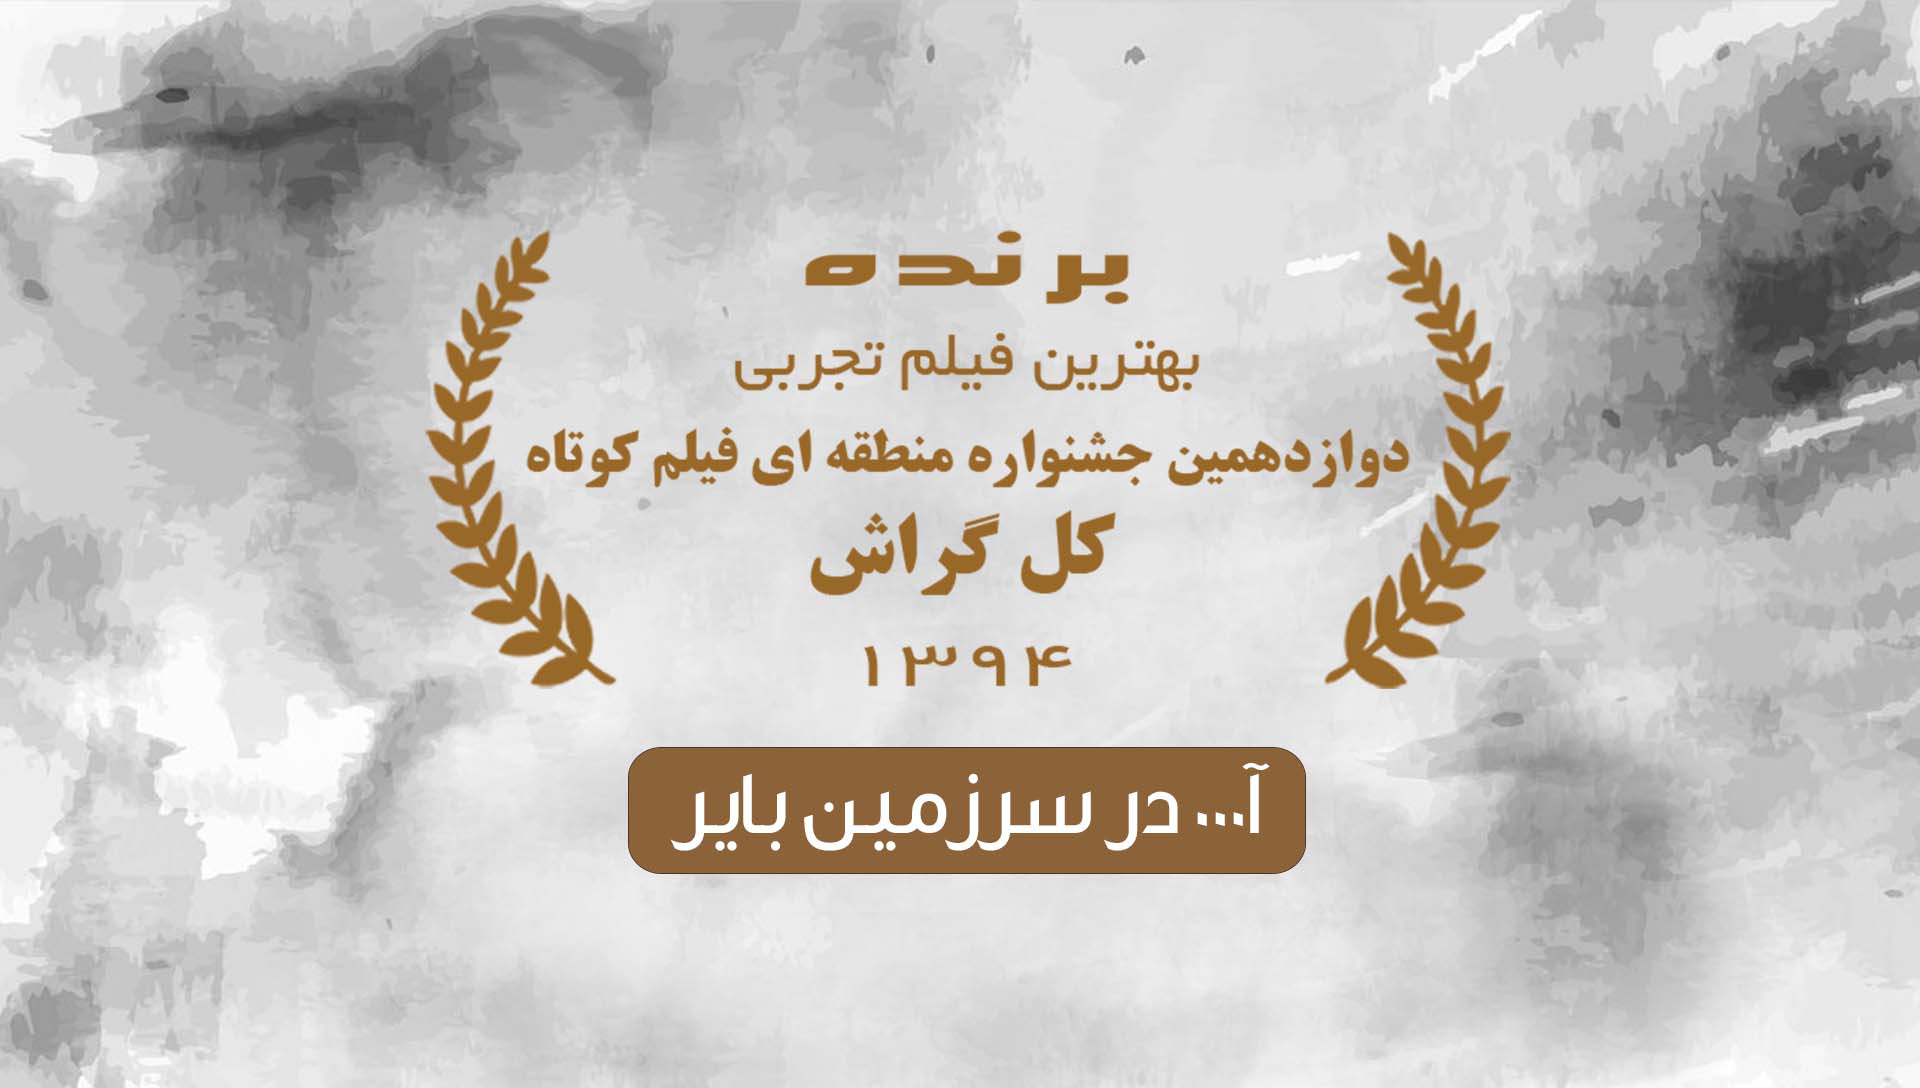 کل گراش 94- شرکت فیلم سازی زوم شیراز برادران شریفی